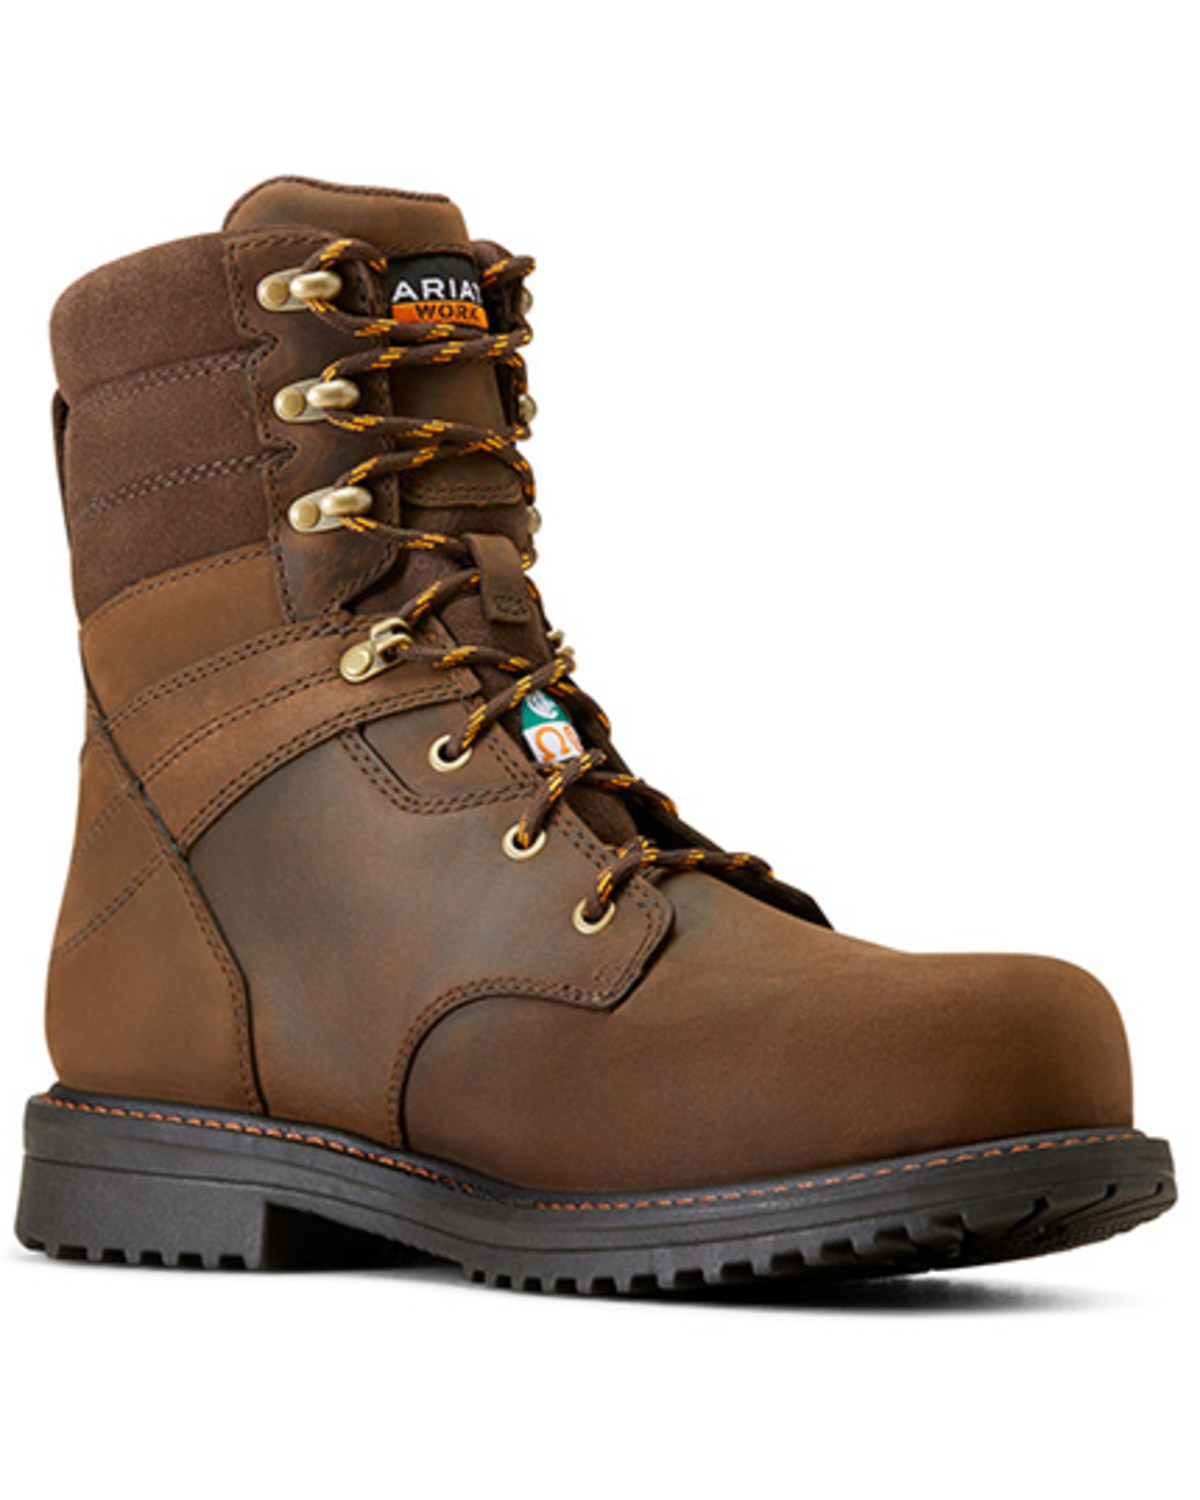 Ariat Men's 8" RigTEK CSA Waterproof Work Boots - Composite Toe